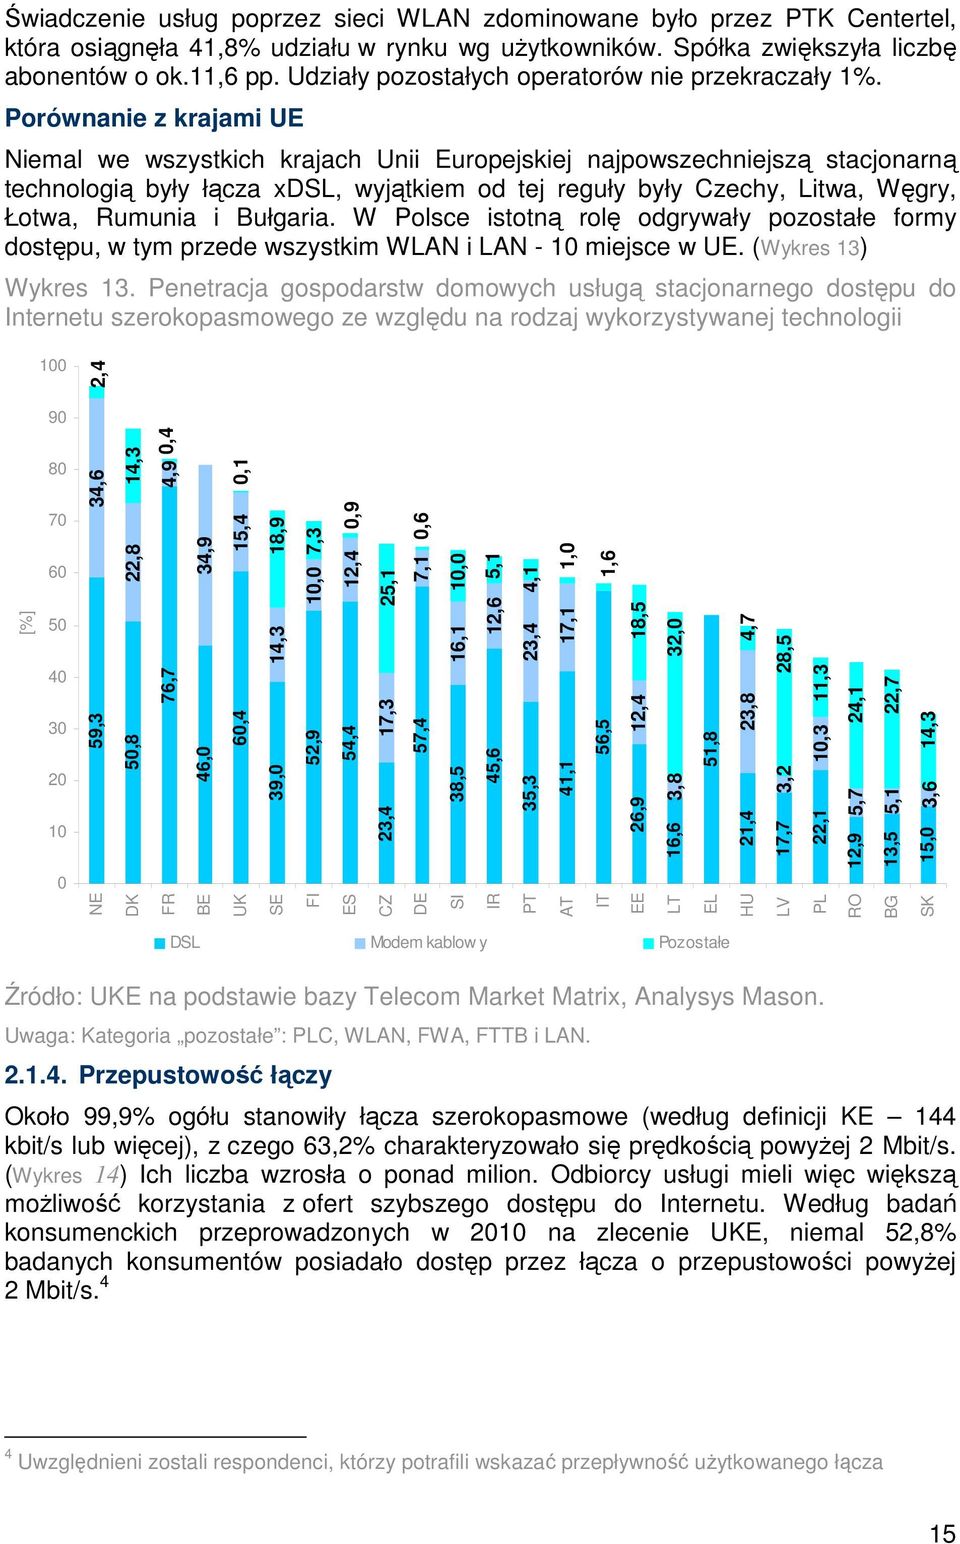 Porównanie z krajami UE Niemal we wszystkich krajach Unii Europejskiej najpowszechniejszą stacjonarną technologią były łącza xdsl, wyjątkiem od tej reguły były Czechy, Litwa, Węgry, Łotwa, Rumunia i